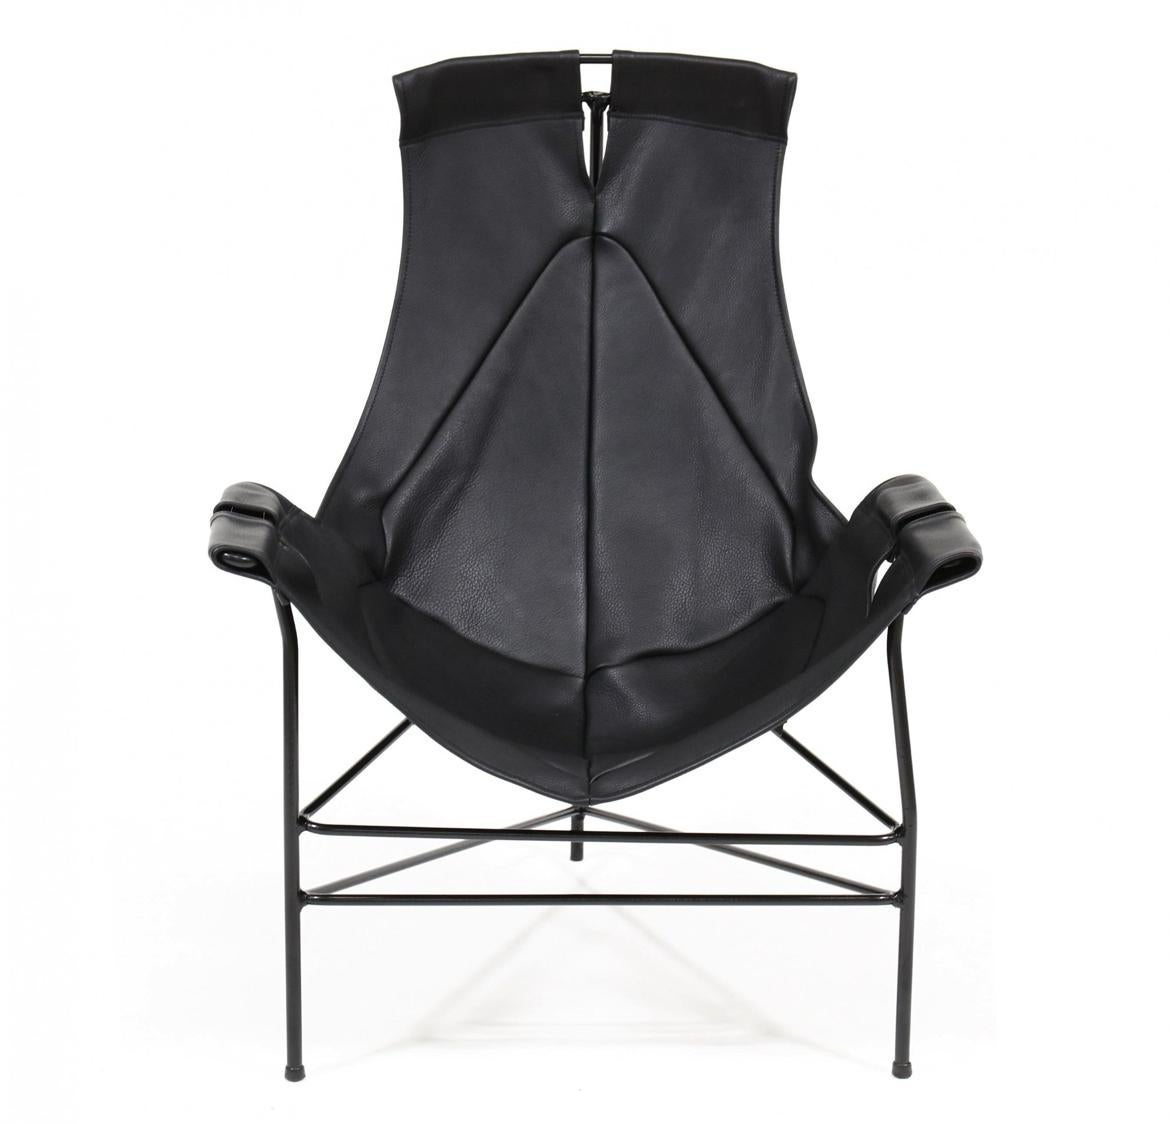 Chaise longue en cuir noir du milieu du siècle, conçue par Jerry Johnson pour Leathercraft en 1954. Bon état vintage prêt à l'emploi. Situé à Brooklyn NYC

Mesures 
24 x 20 x 31